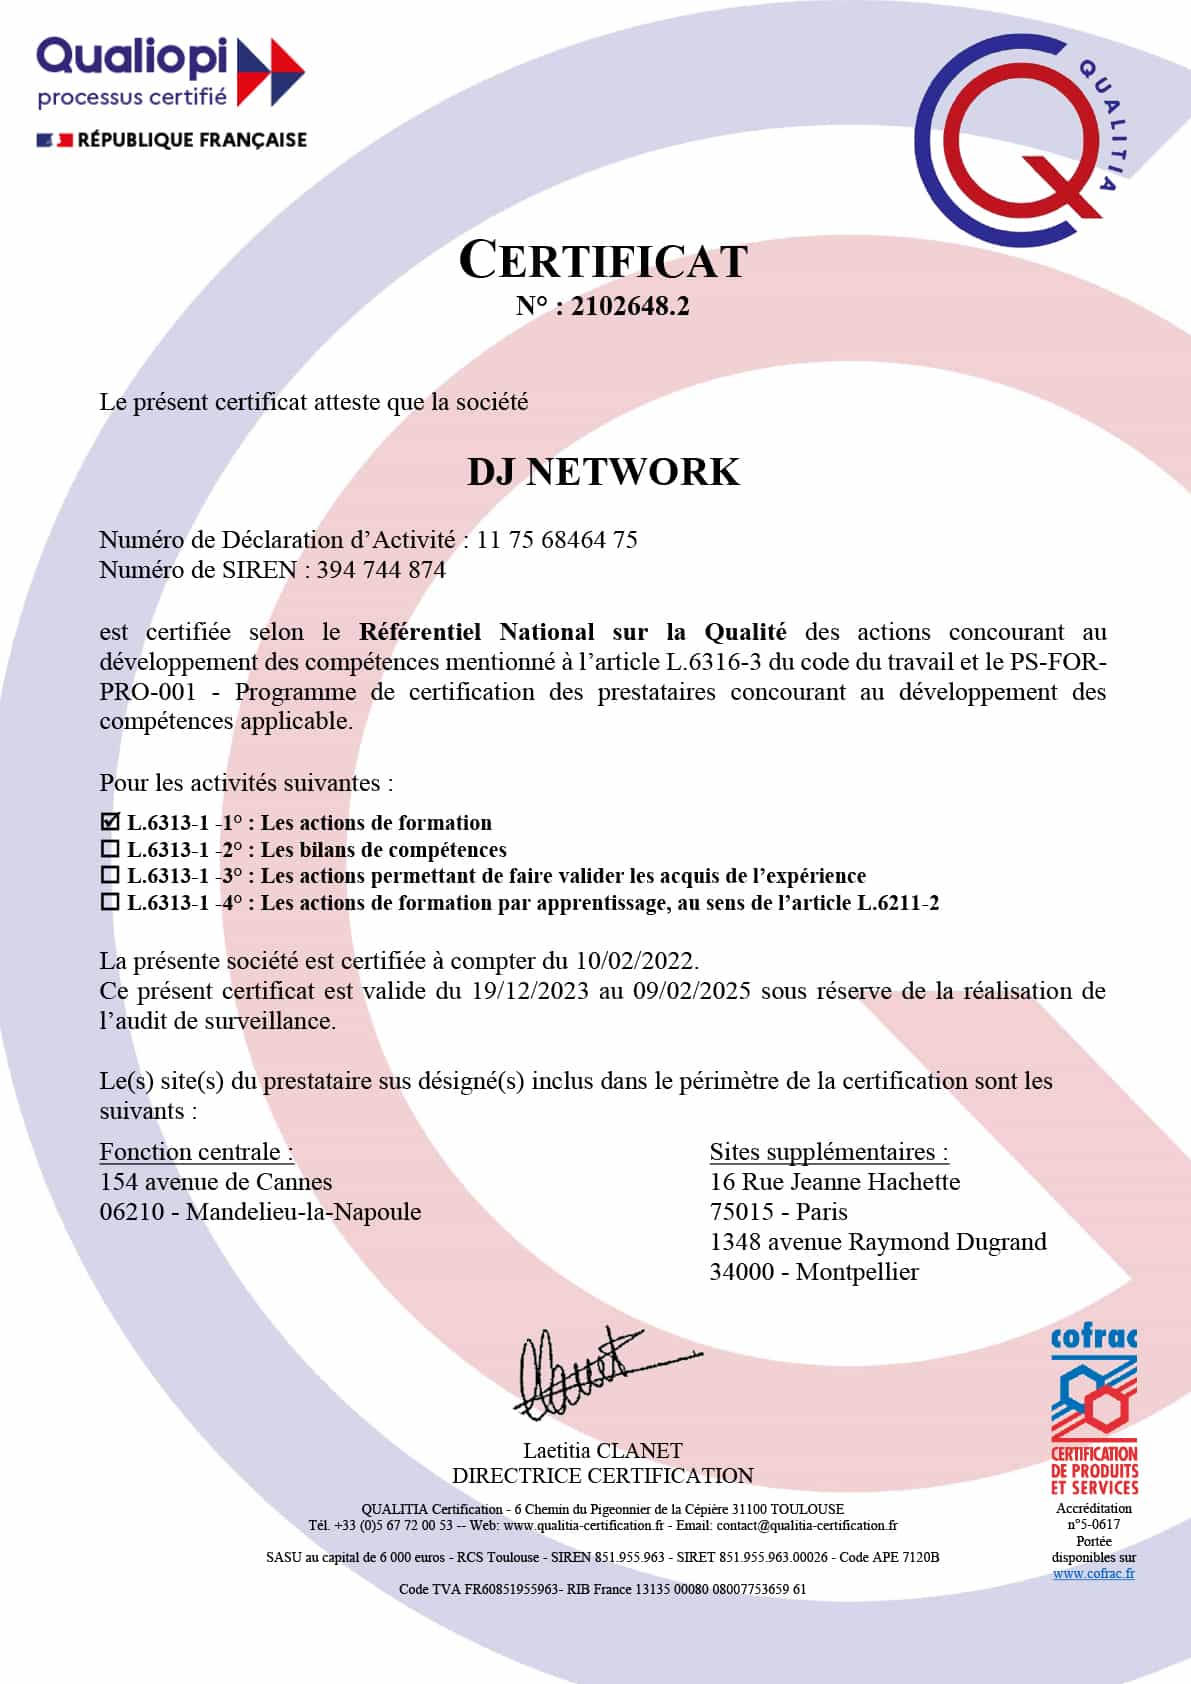 Certificat Qualiopi pour les actions de formations de DJ NETWORK.